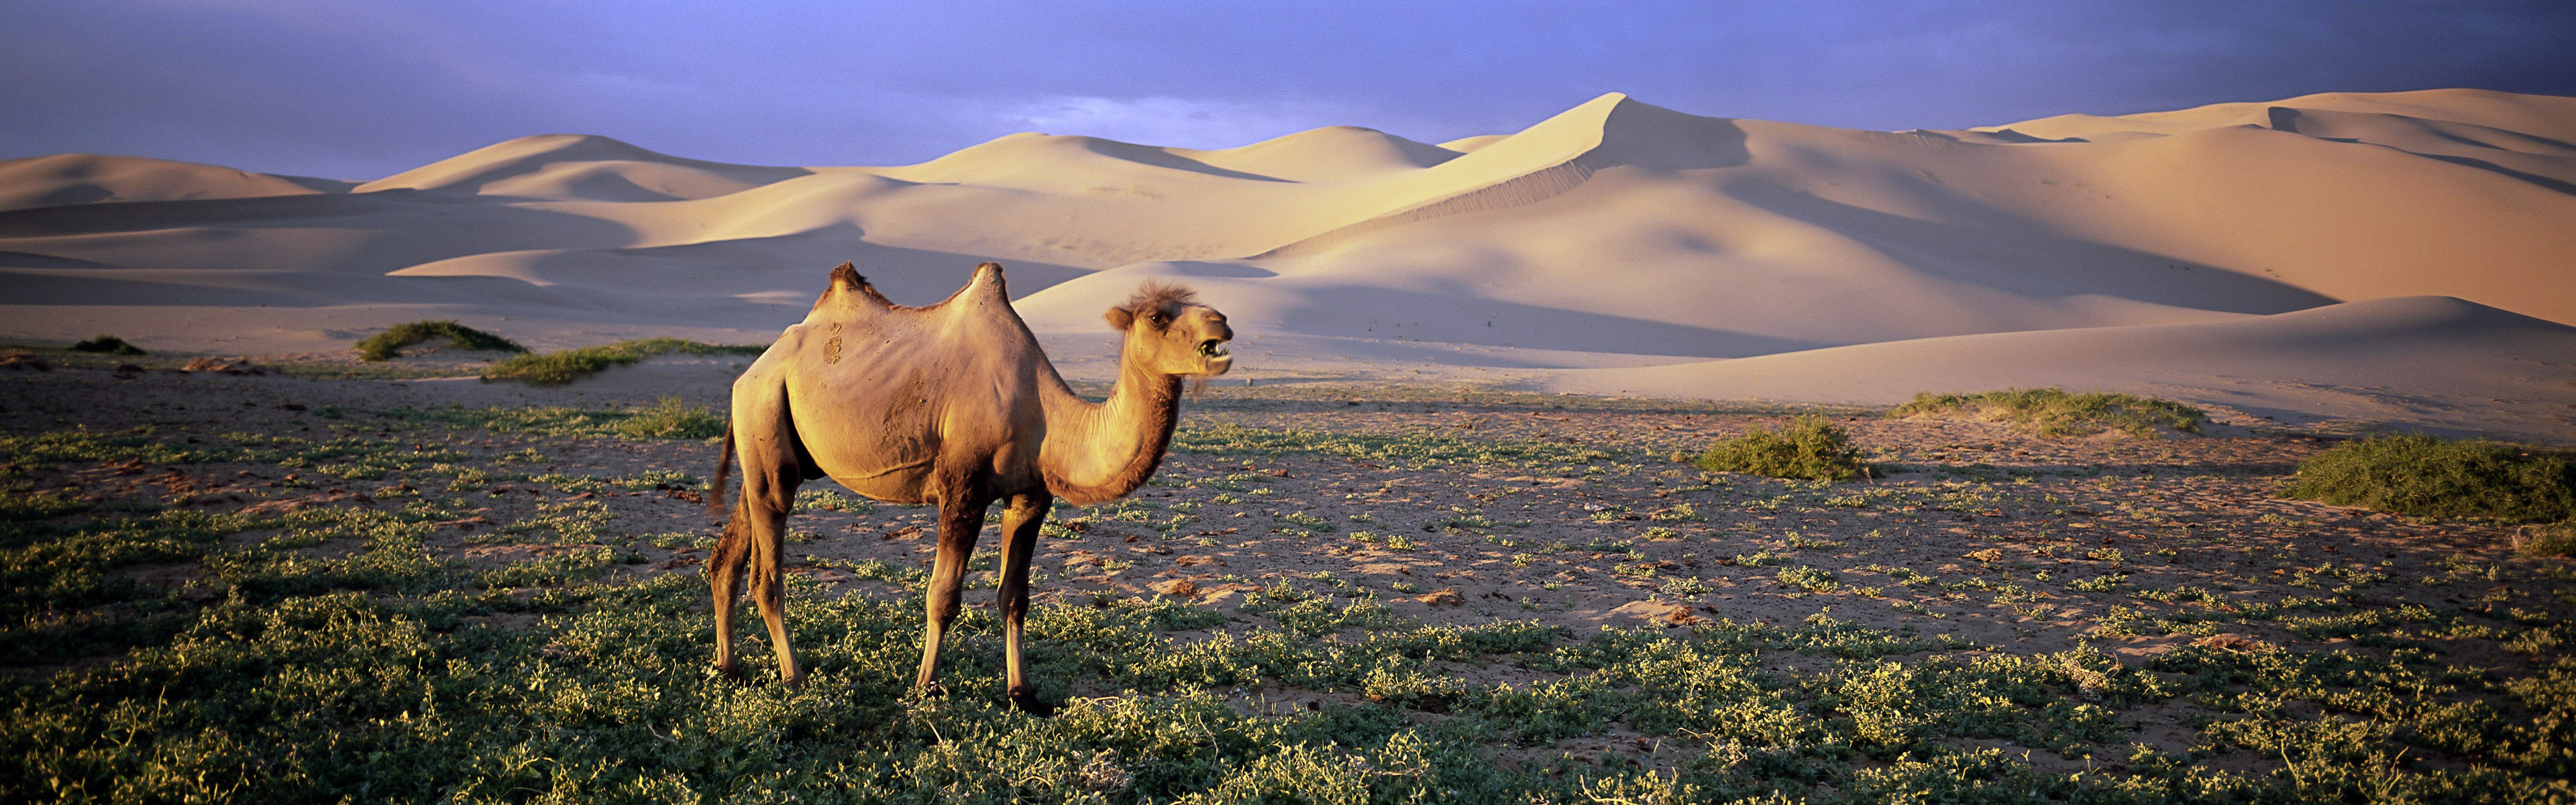 General 3840x1200 nature animals wildlife desert camels landscape mammals